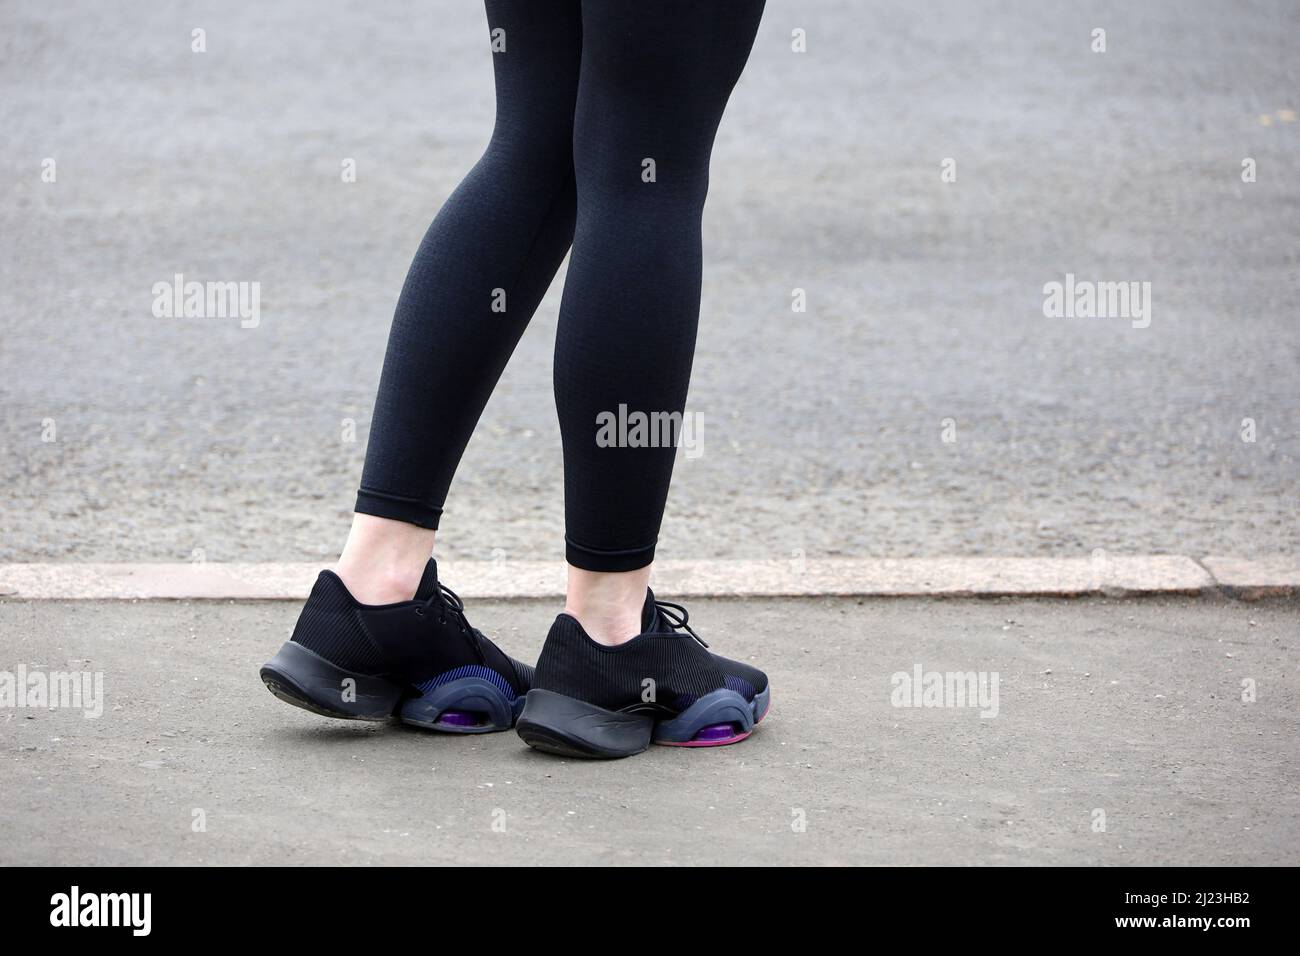 Jambes de femme en baskets et leggings sur asphalte, Slim girl Runner sur une rue. Concept de l'entraînement de printemps en ville Banque D'Images